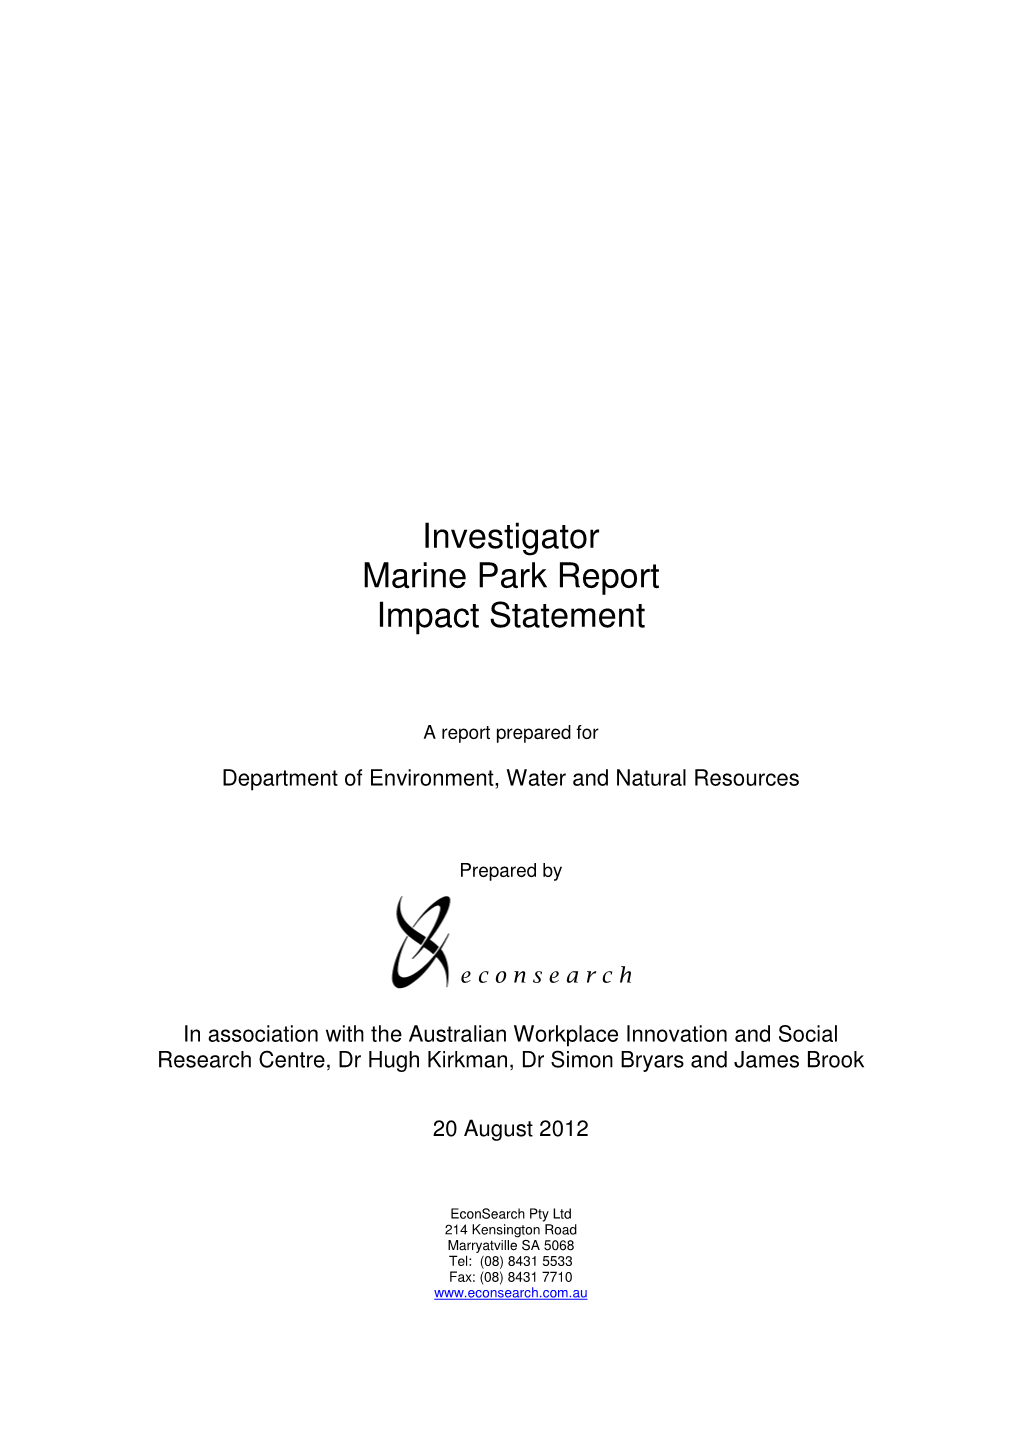 Investigator Marine Park Report Impact Statement